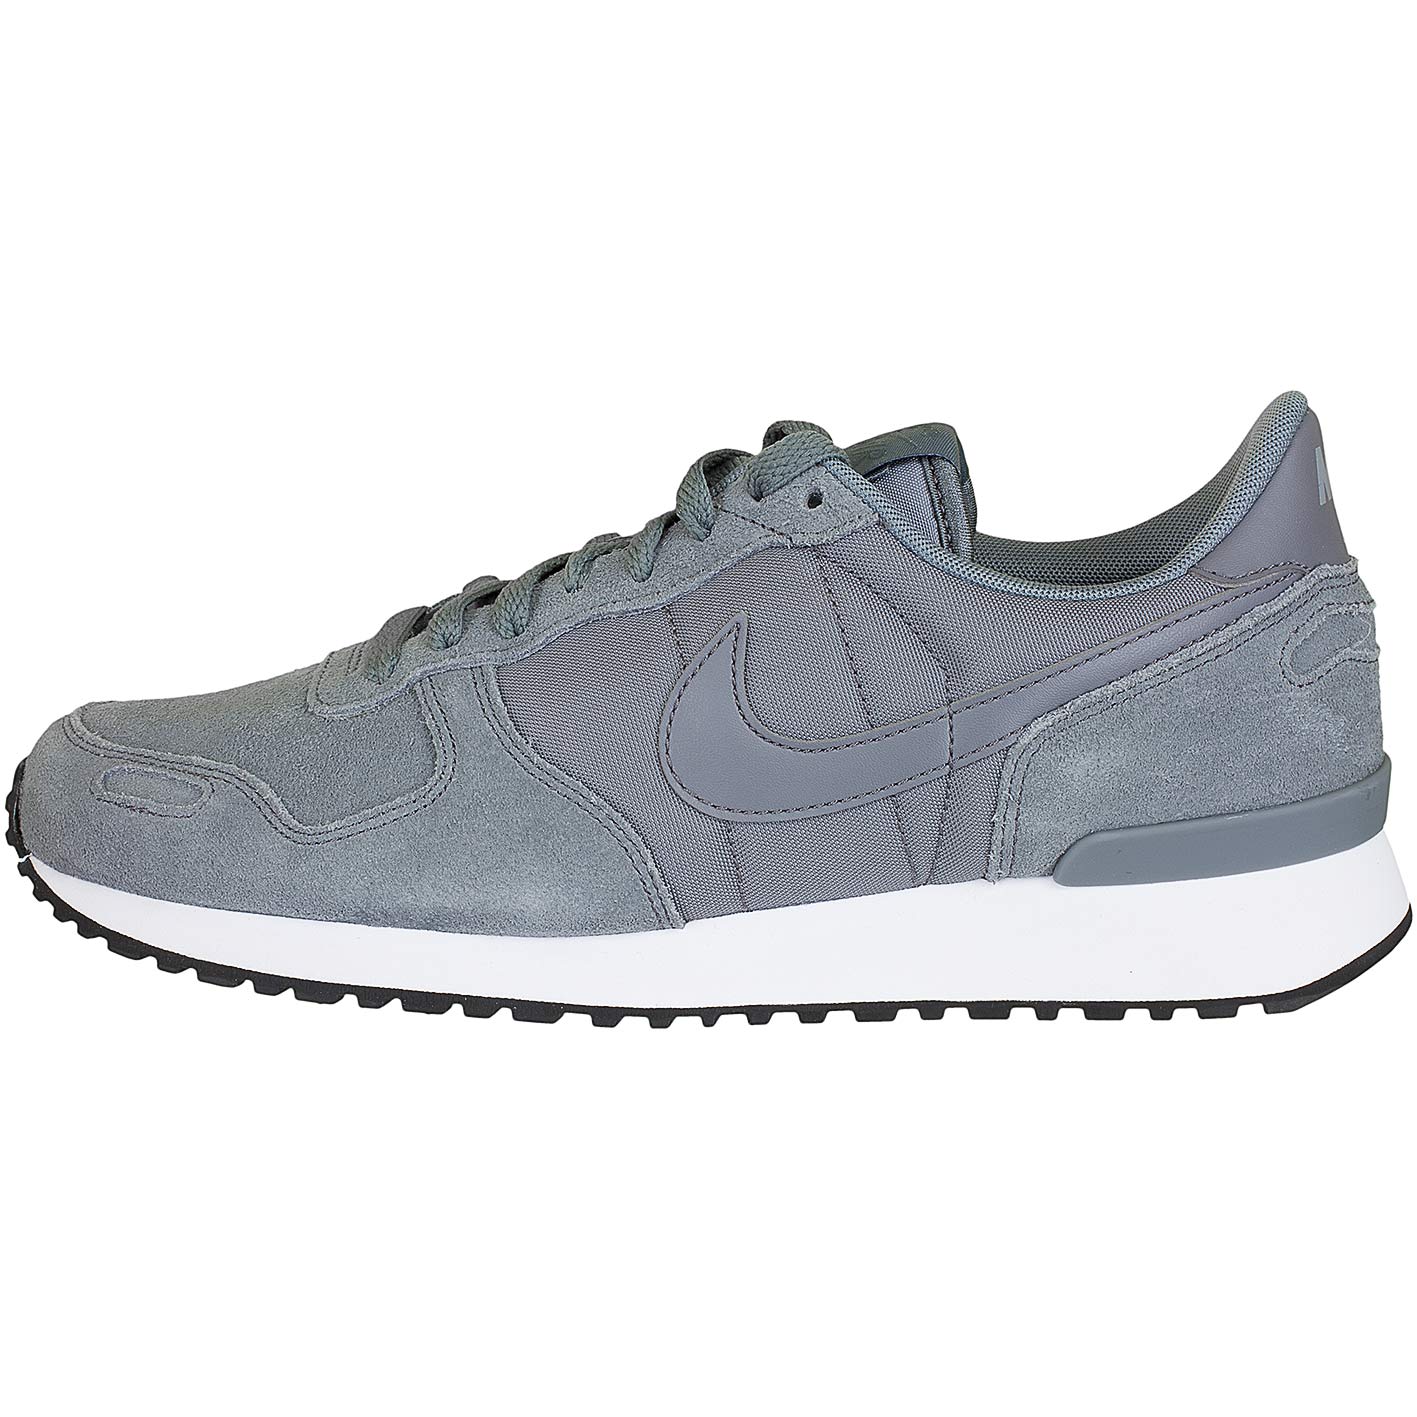 ☆ Nike Sneaker Air Vortex Leather grau/grau - hier bestellen!